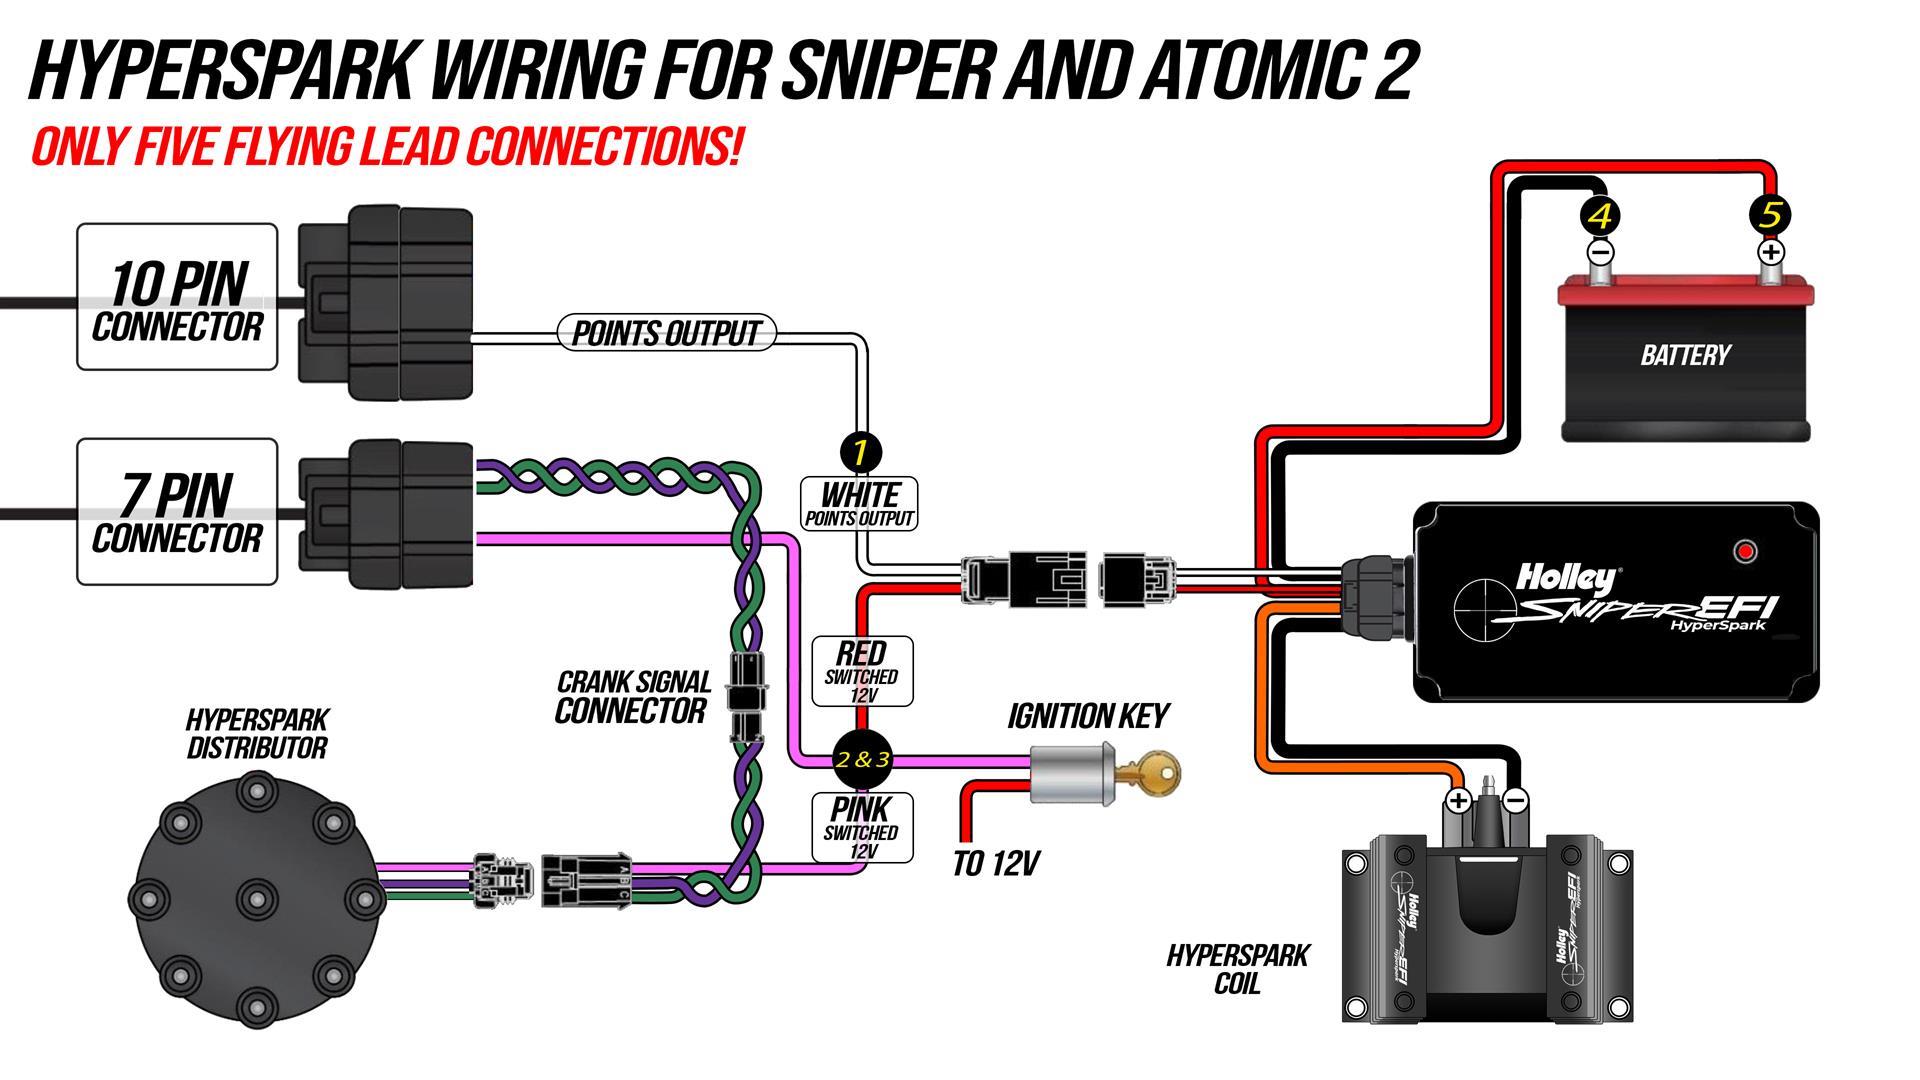 Hyperspark Wiring For Sniper And Atomic 2 - www.holleyefi.se - Klicka för större format